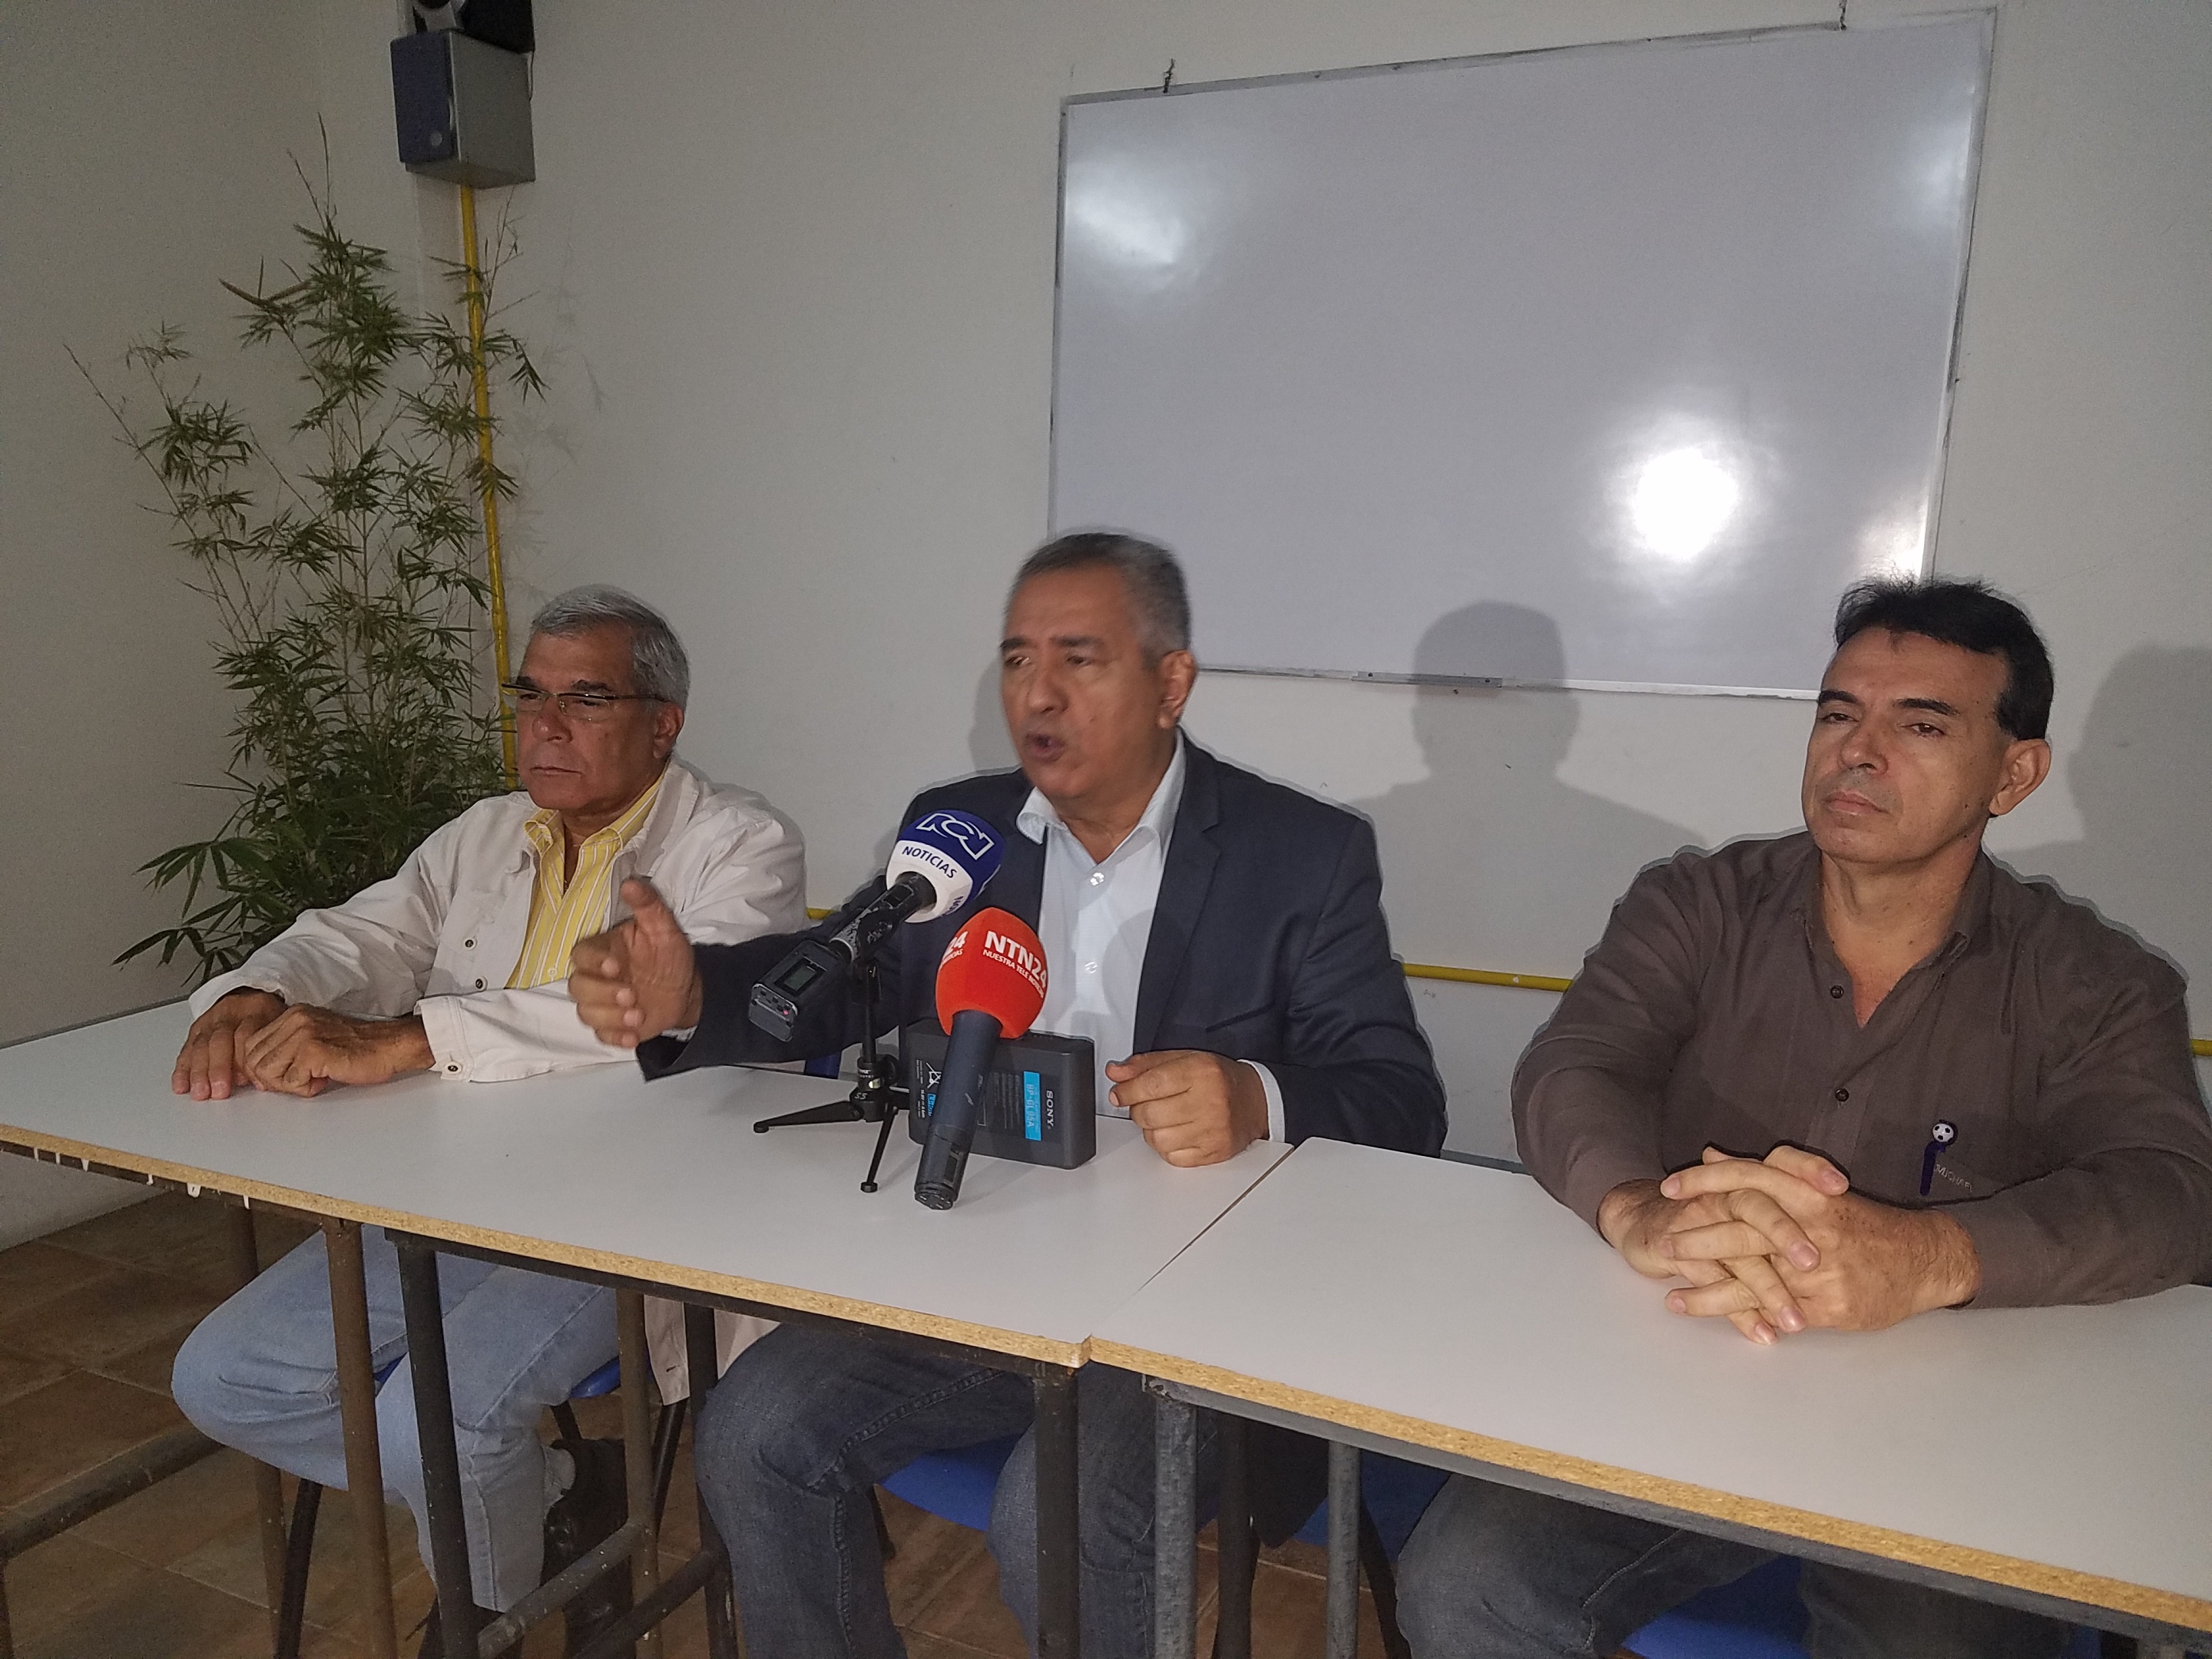 “Lucena y el CNE cometieron fraude y forjaron partida de nacimiento de Maduro”